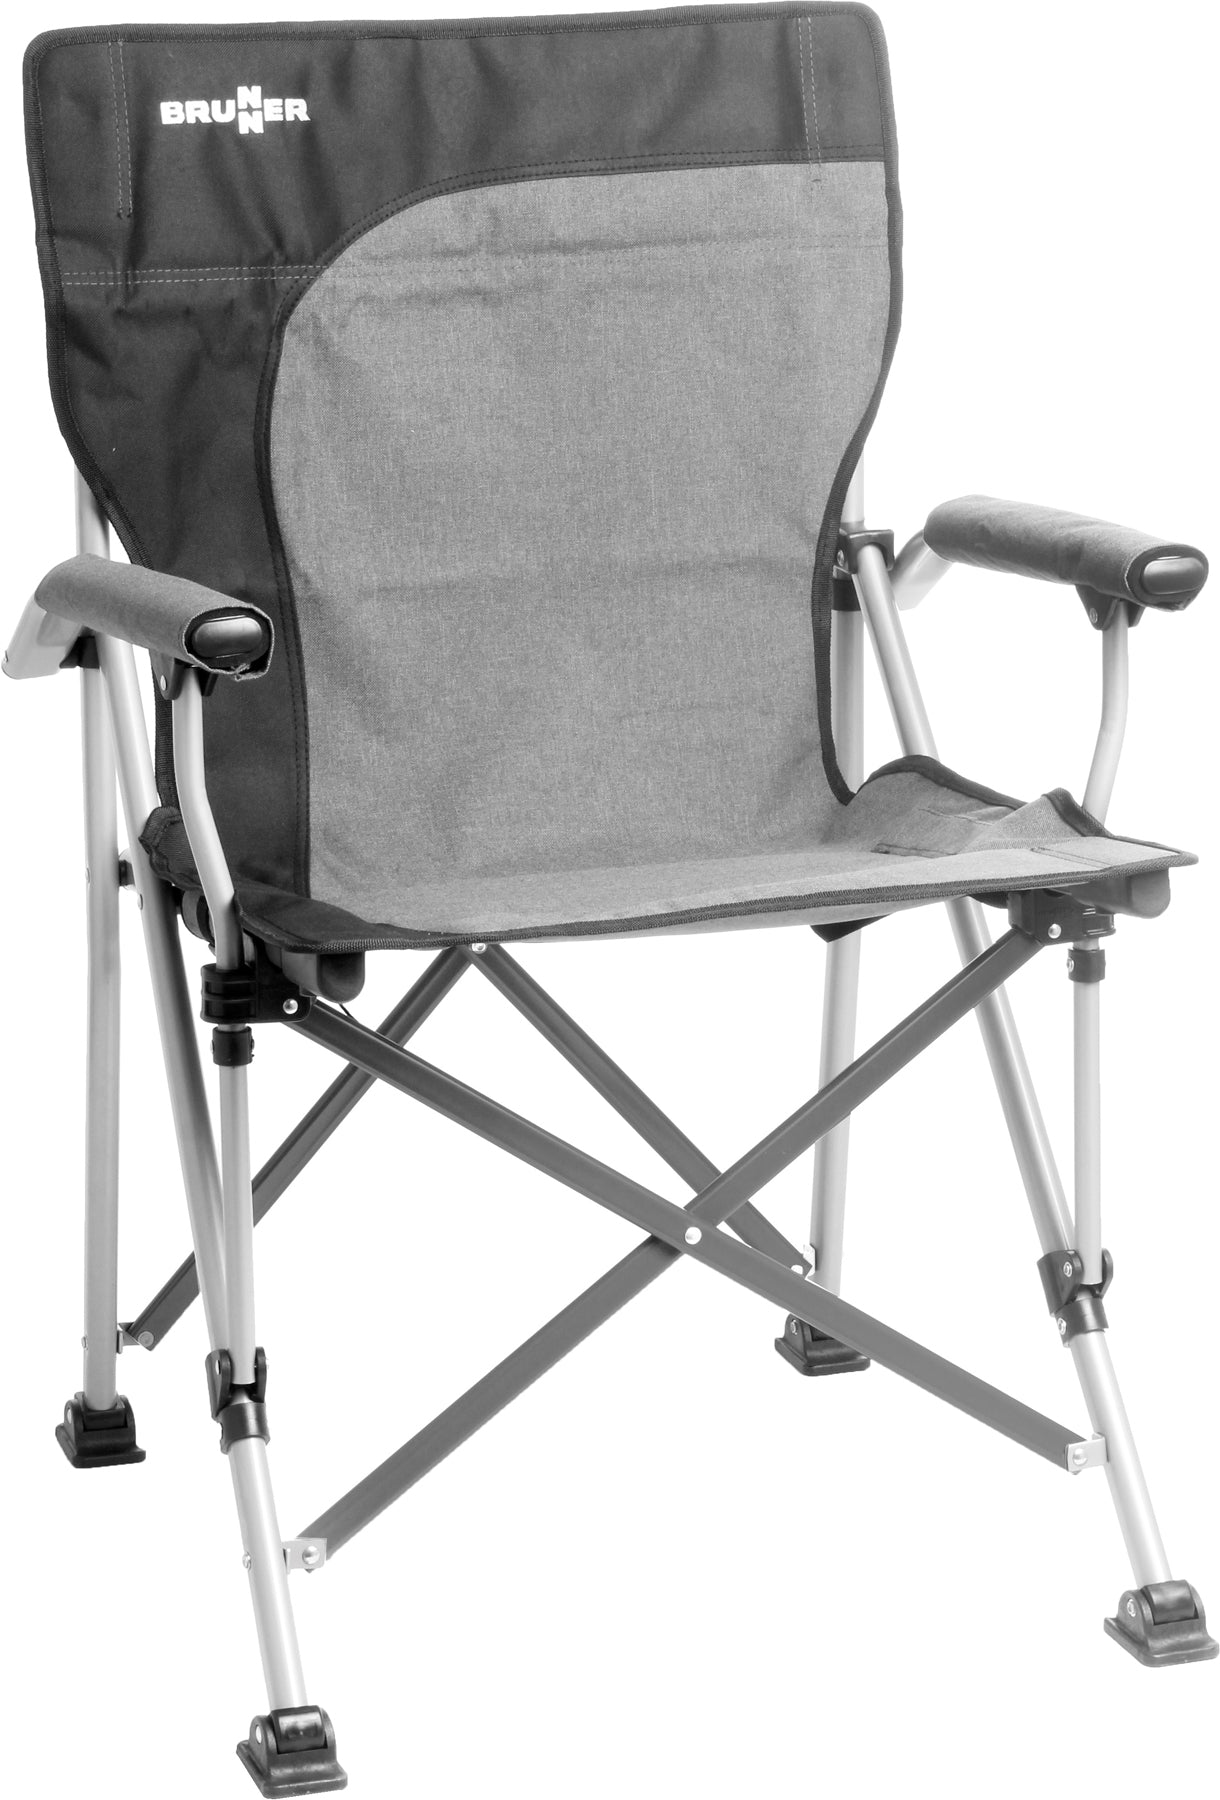 Качествен сгъваем стол за къмпинг лесно преносим и удобен, здрава конструкция. High quality folding chair for camping, compact folded size. Strong and tough reliable.